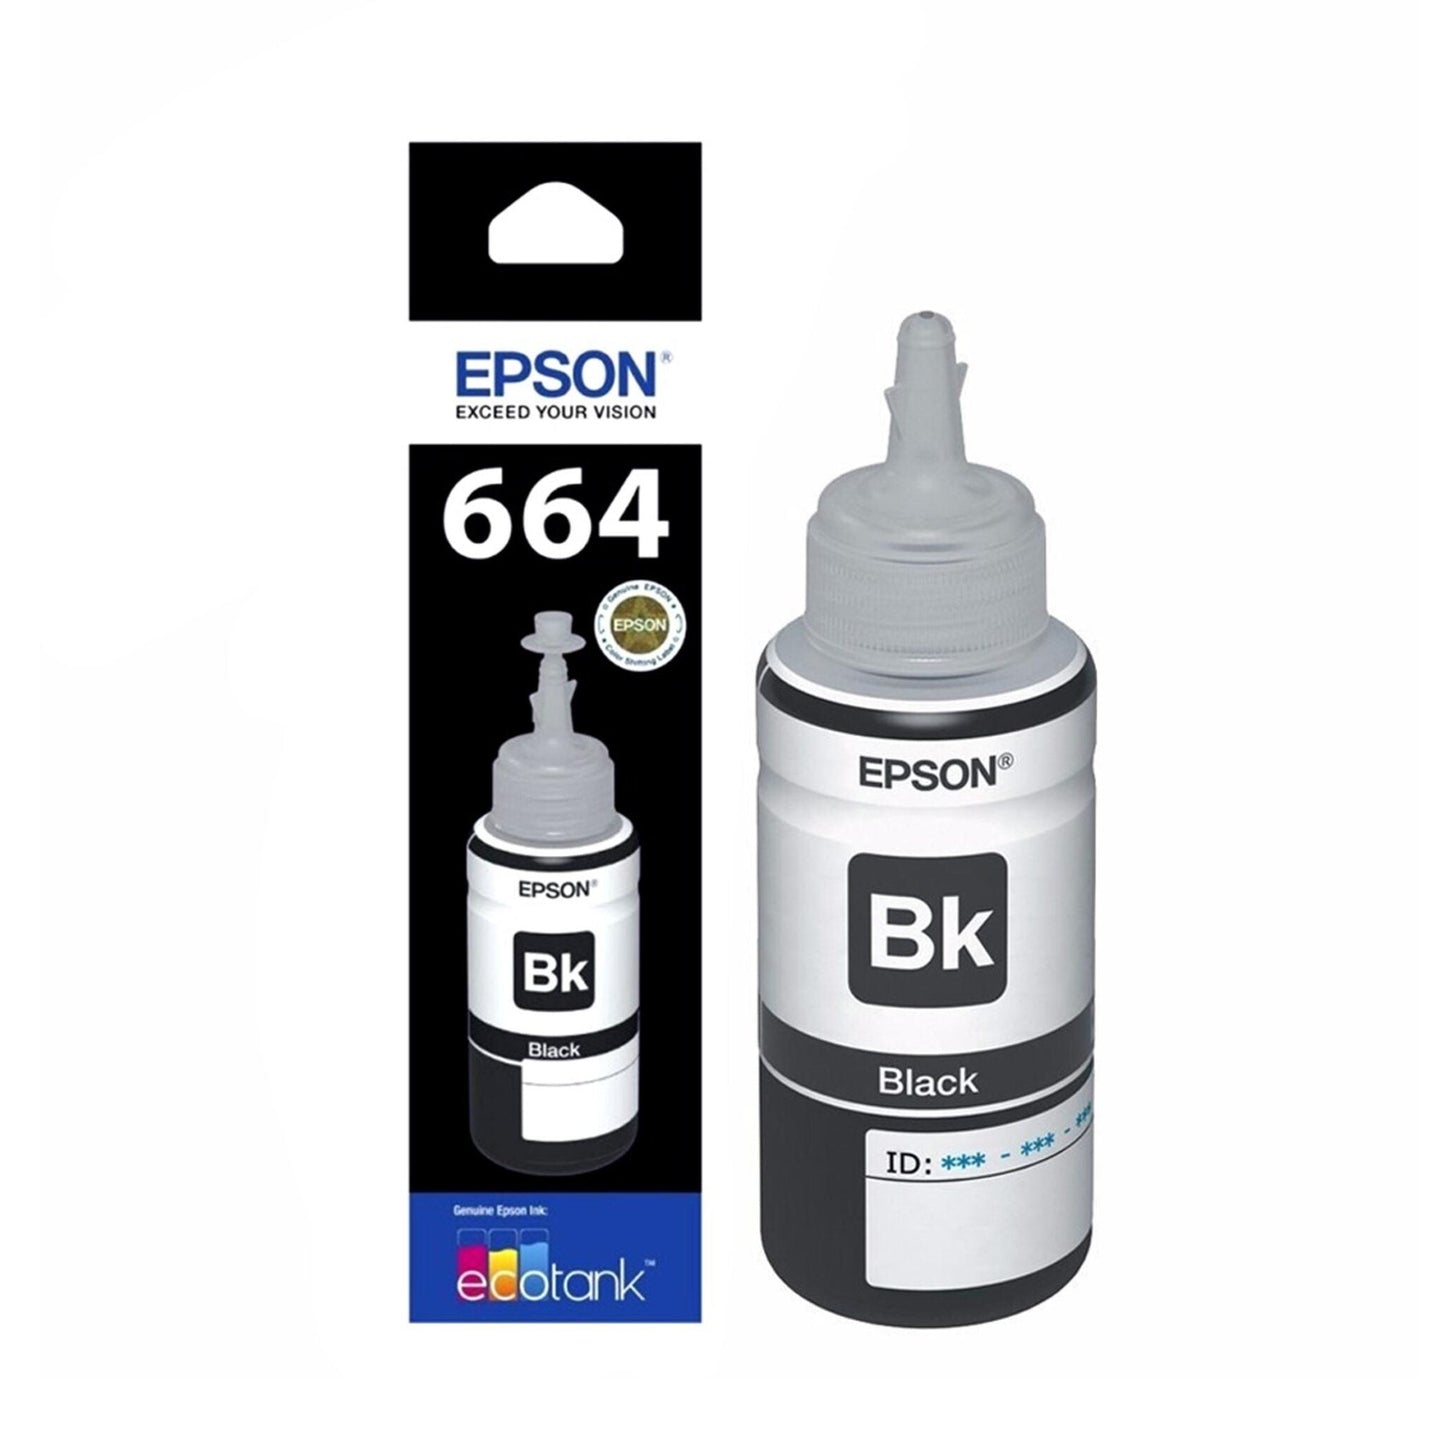 Epson 664 Inks